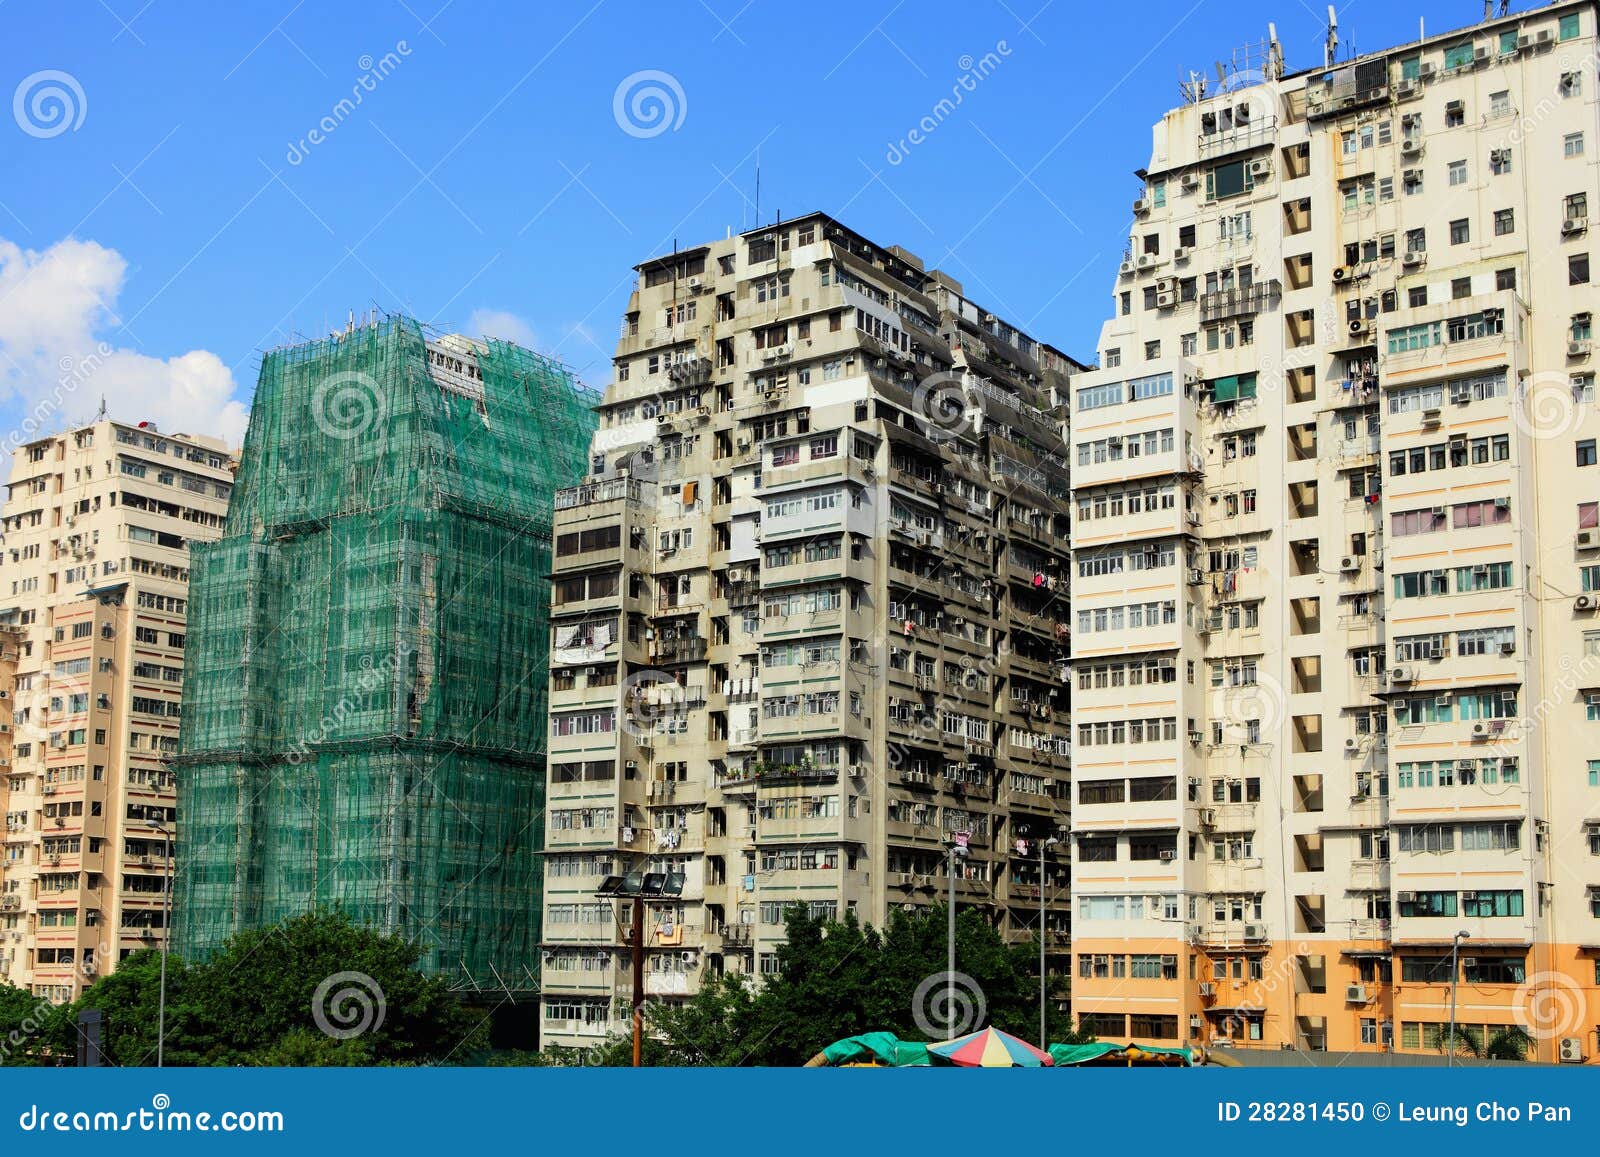 Hong Kong Old Building Stock Photo - Image: 28281450